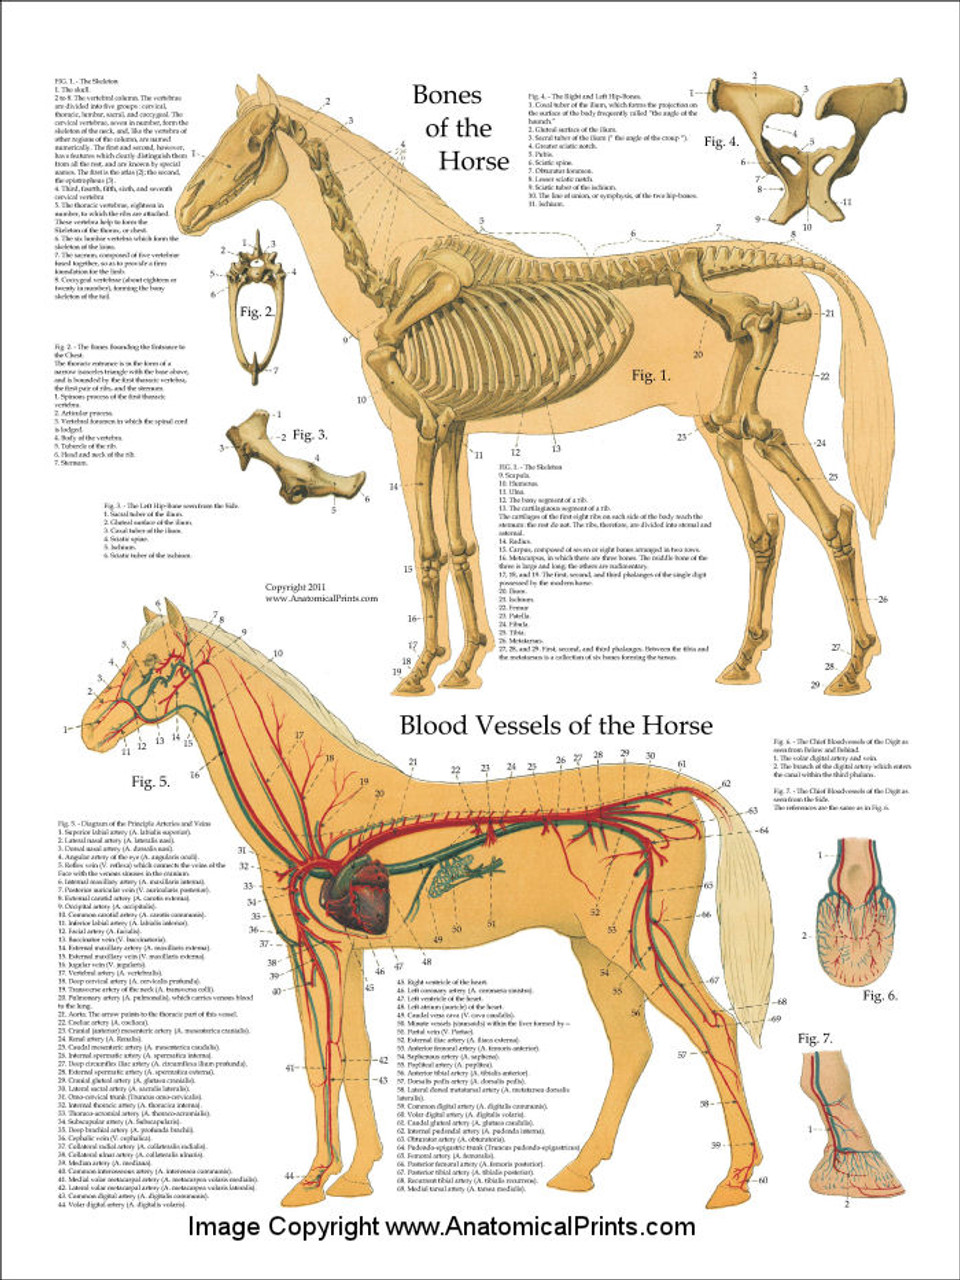 Equine Anatomy Chart